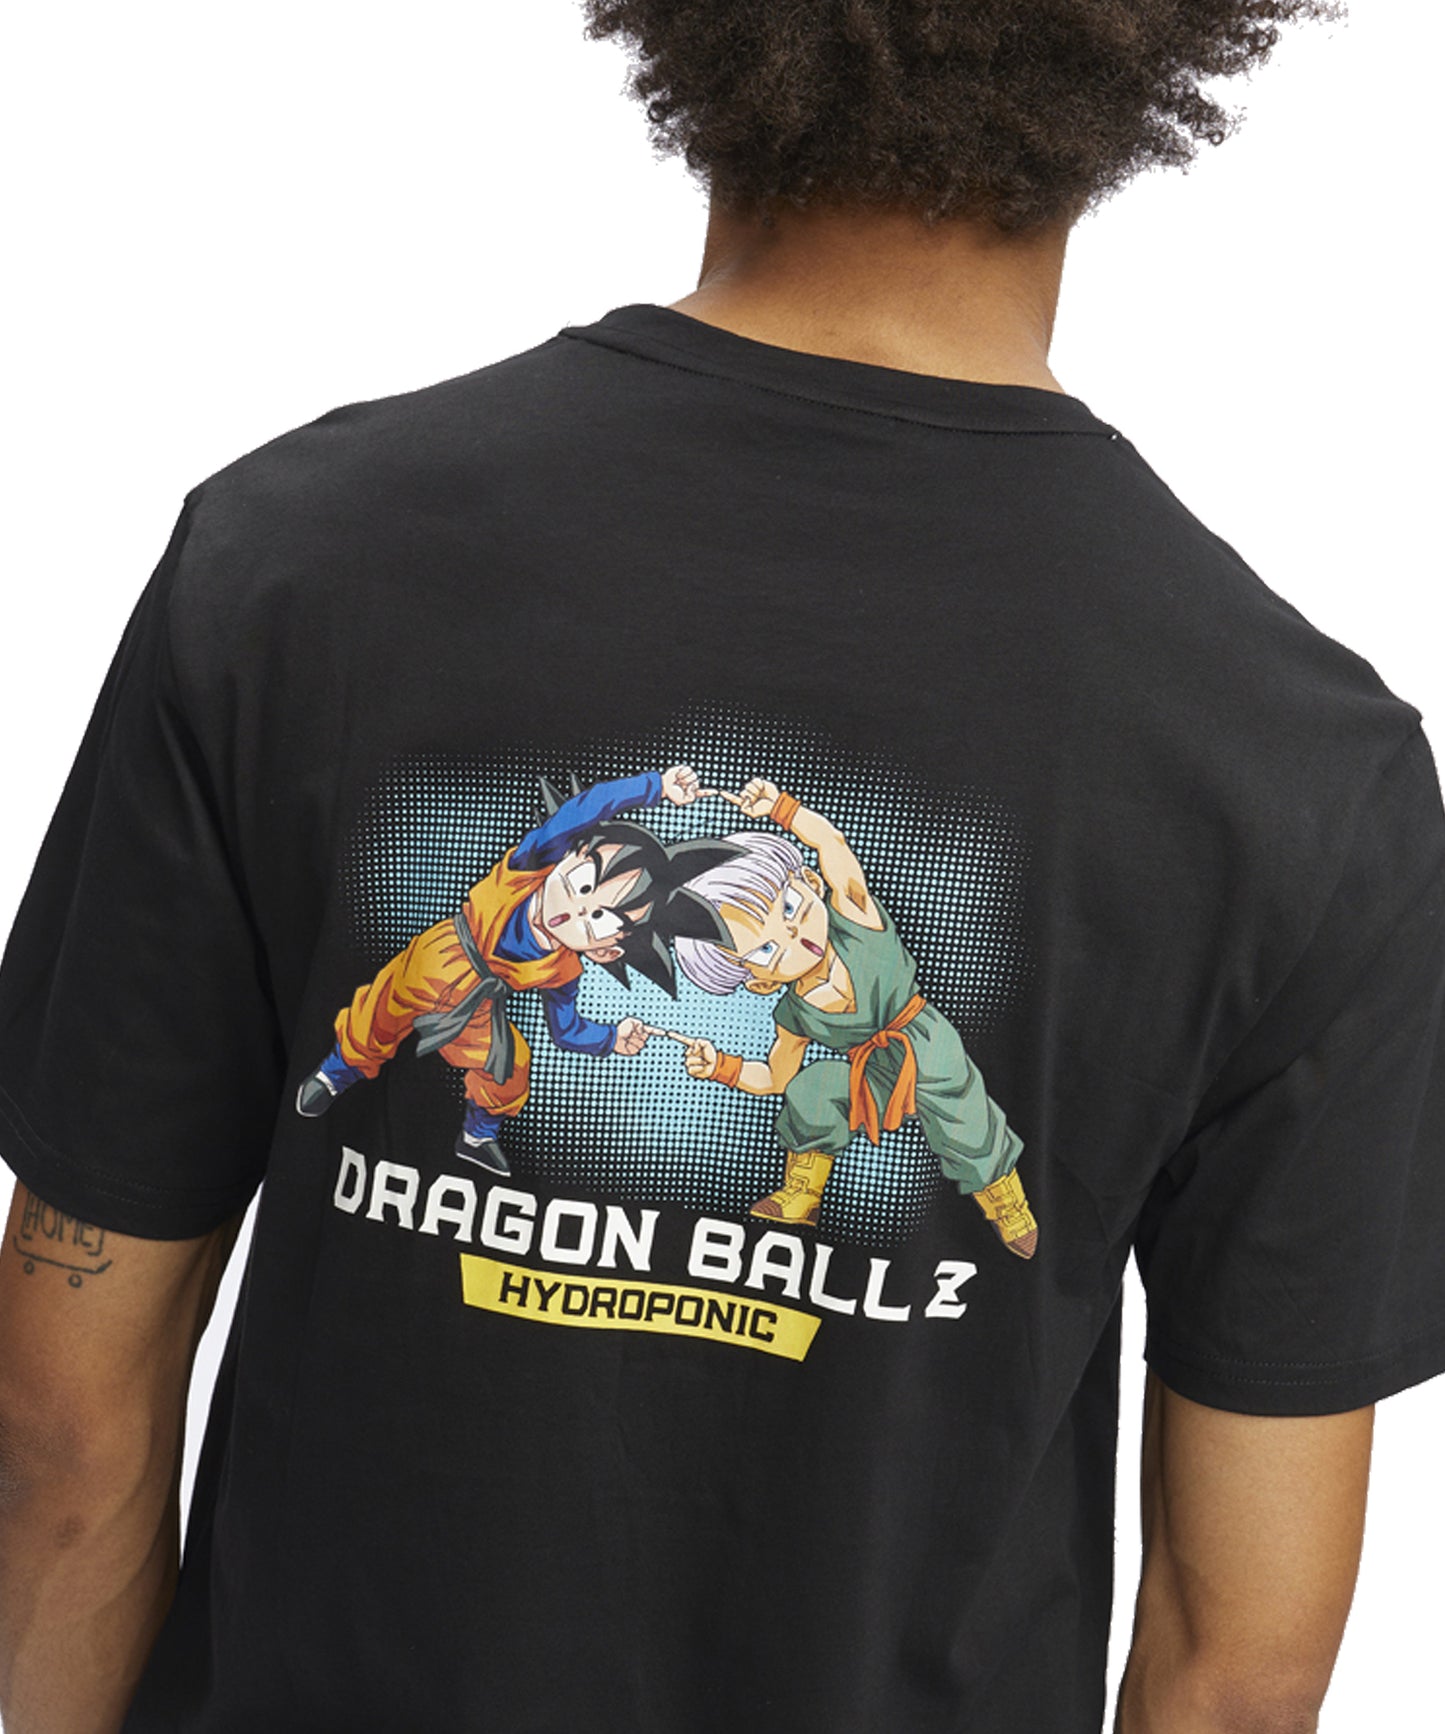 hydroponic-camiseta-manga-corta-dragon-ball-z-fusion-color-negro-serigrafía-dragon-ball-en-el-pecho.